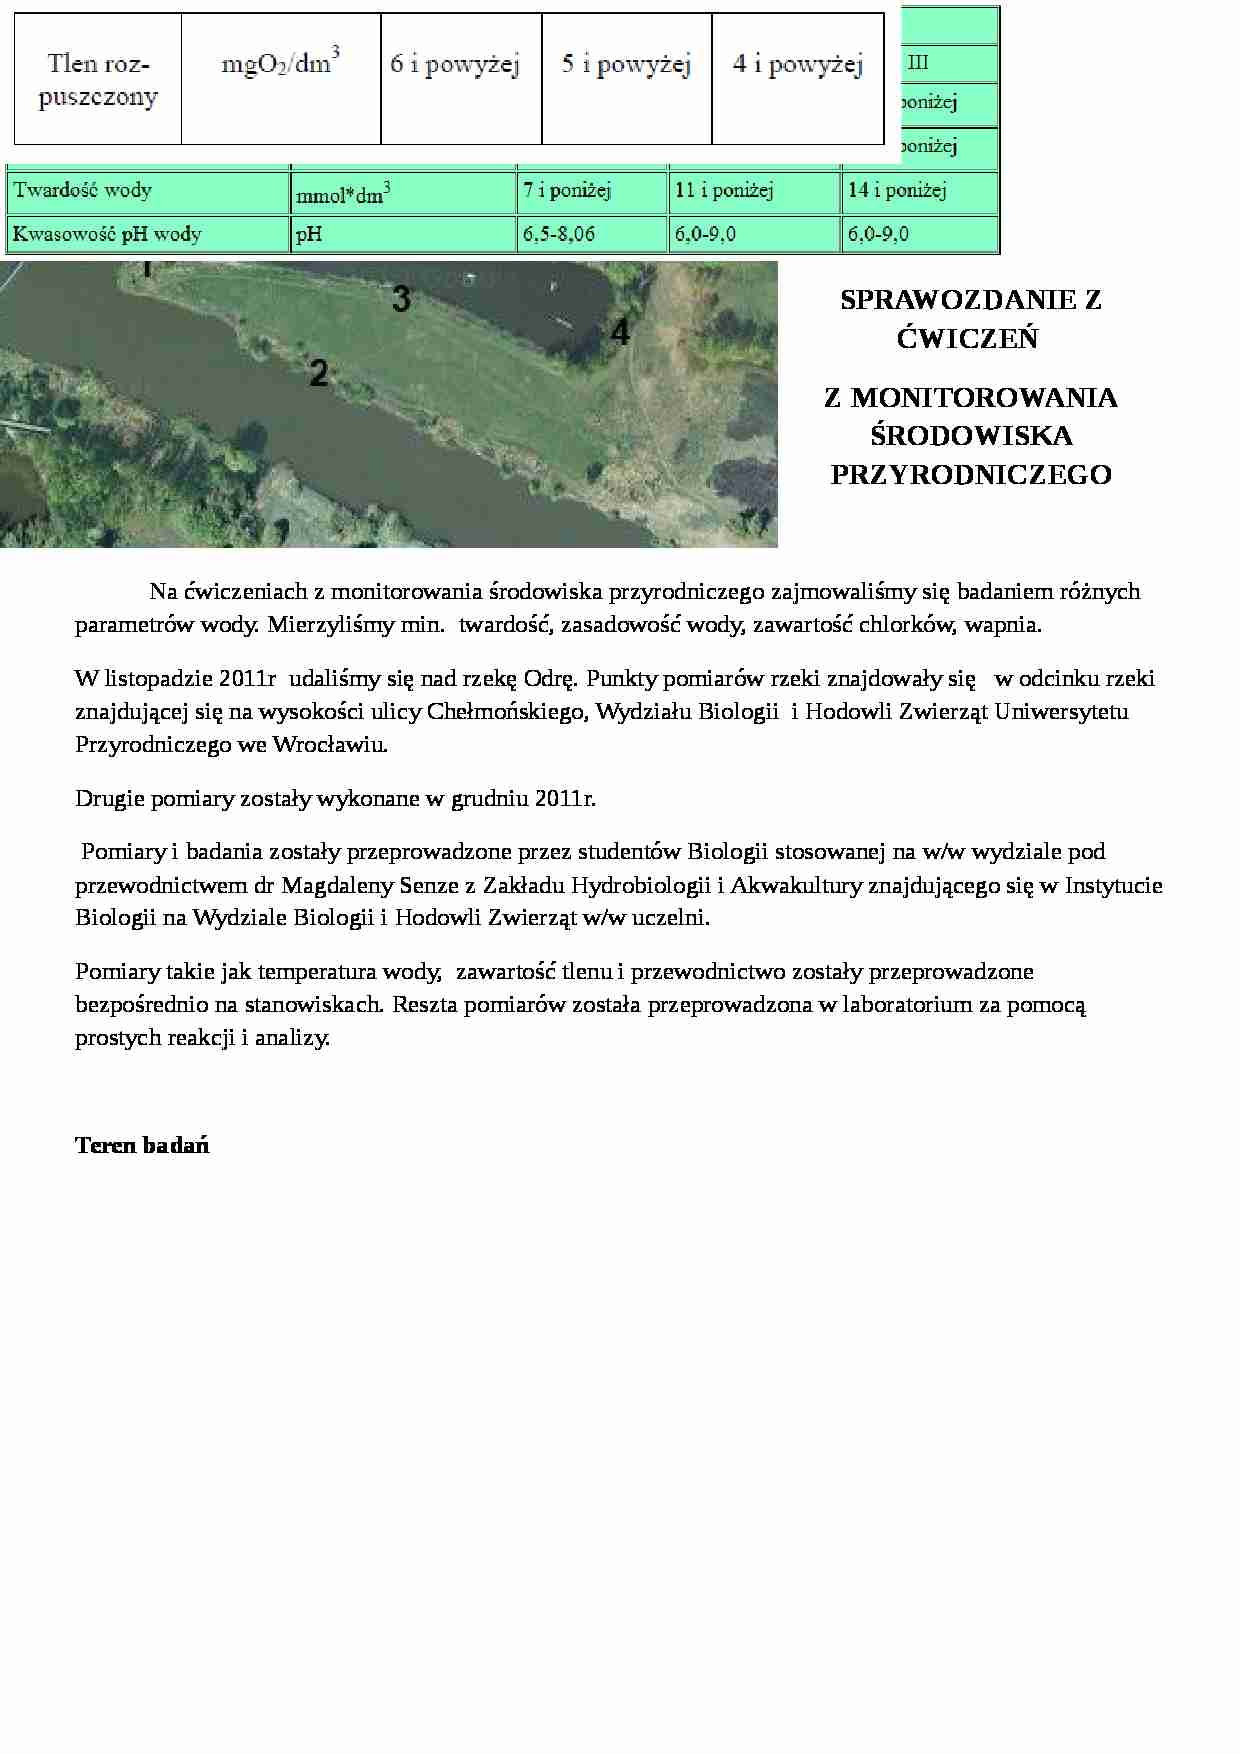 Sprawozdanie z monitorowania środowiska przyrodniczego - strona 1